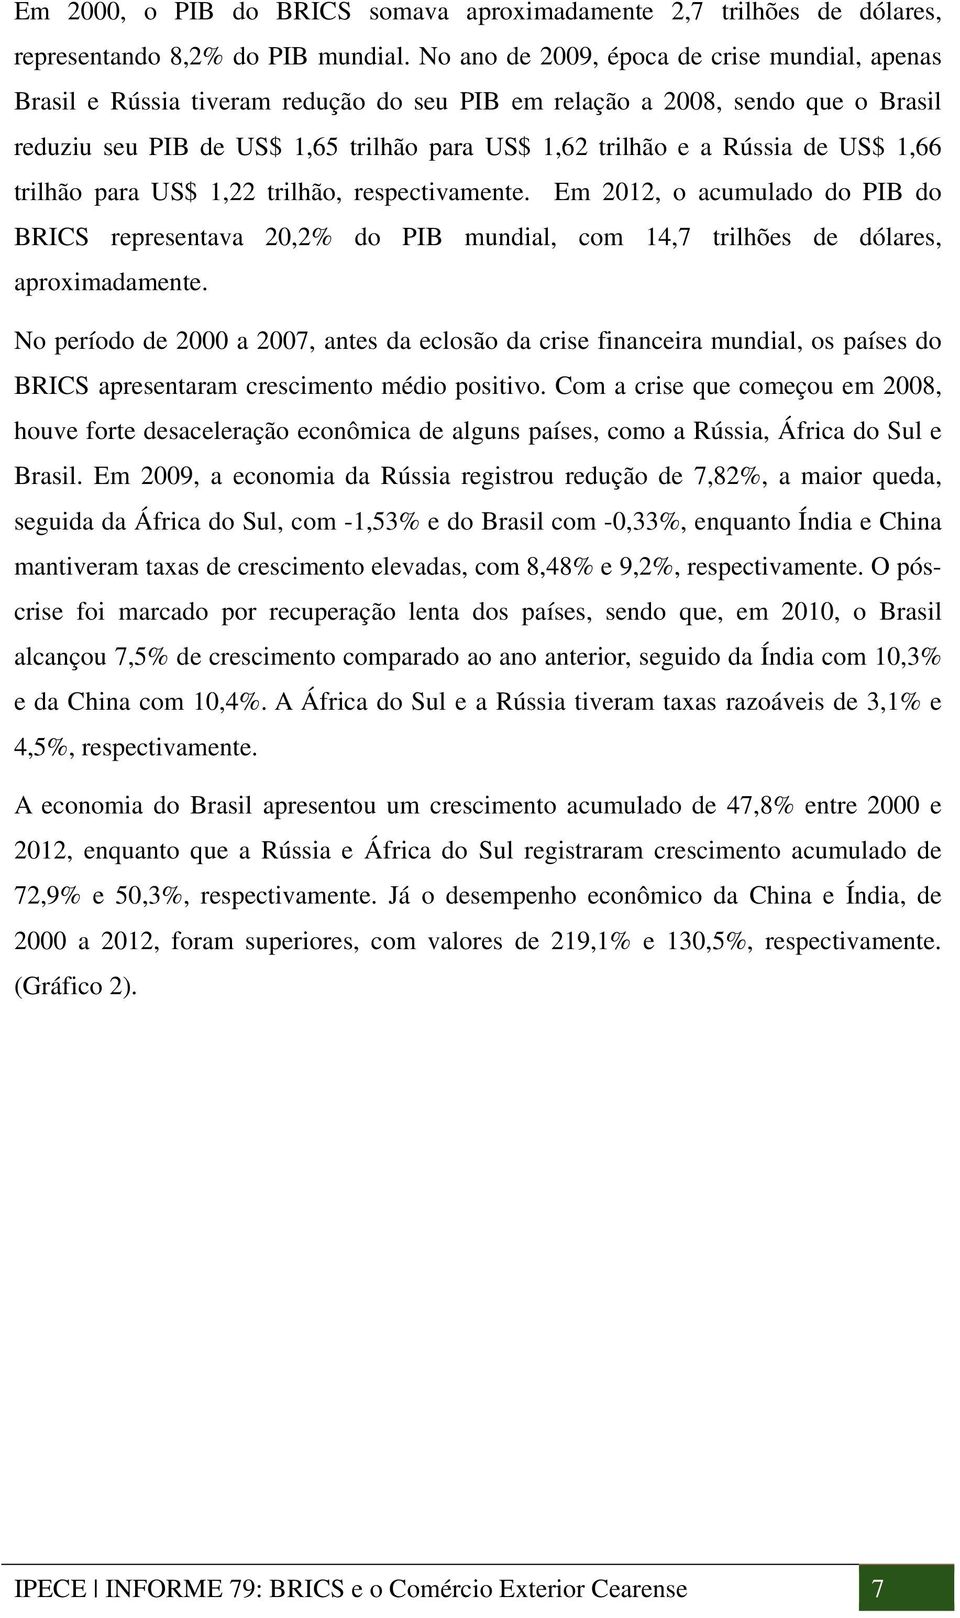 US$ 1,66 trilhão para US$ 1,22 trilhão, respectivamente. Em 2012, o acumulado do PIB do BRICS representava 20,2% do PIB mundial, com 14,7 trilhões de dólares, aproximadamente.